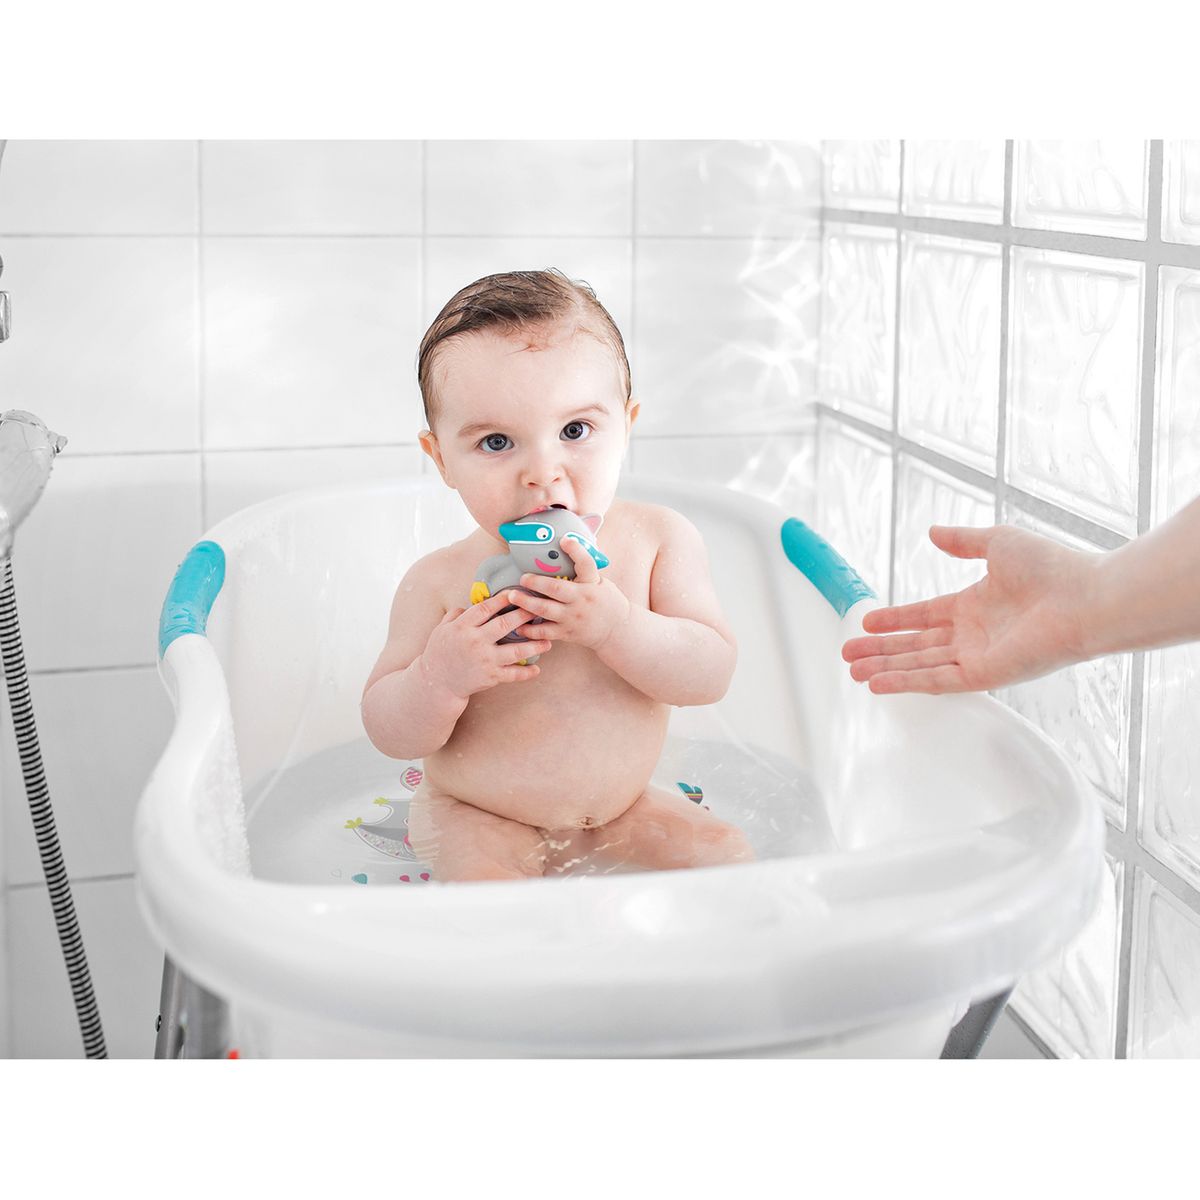 Faire la toilette de votre bébé : les essentiels du bain et des soins